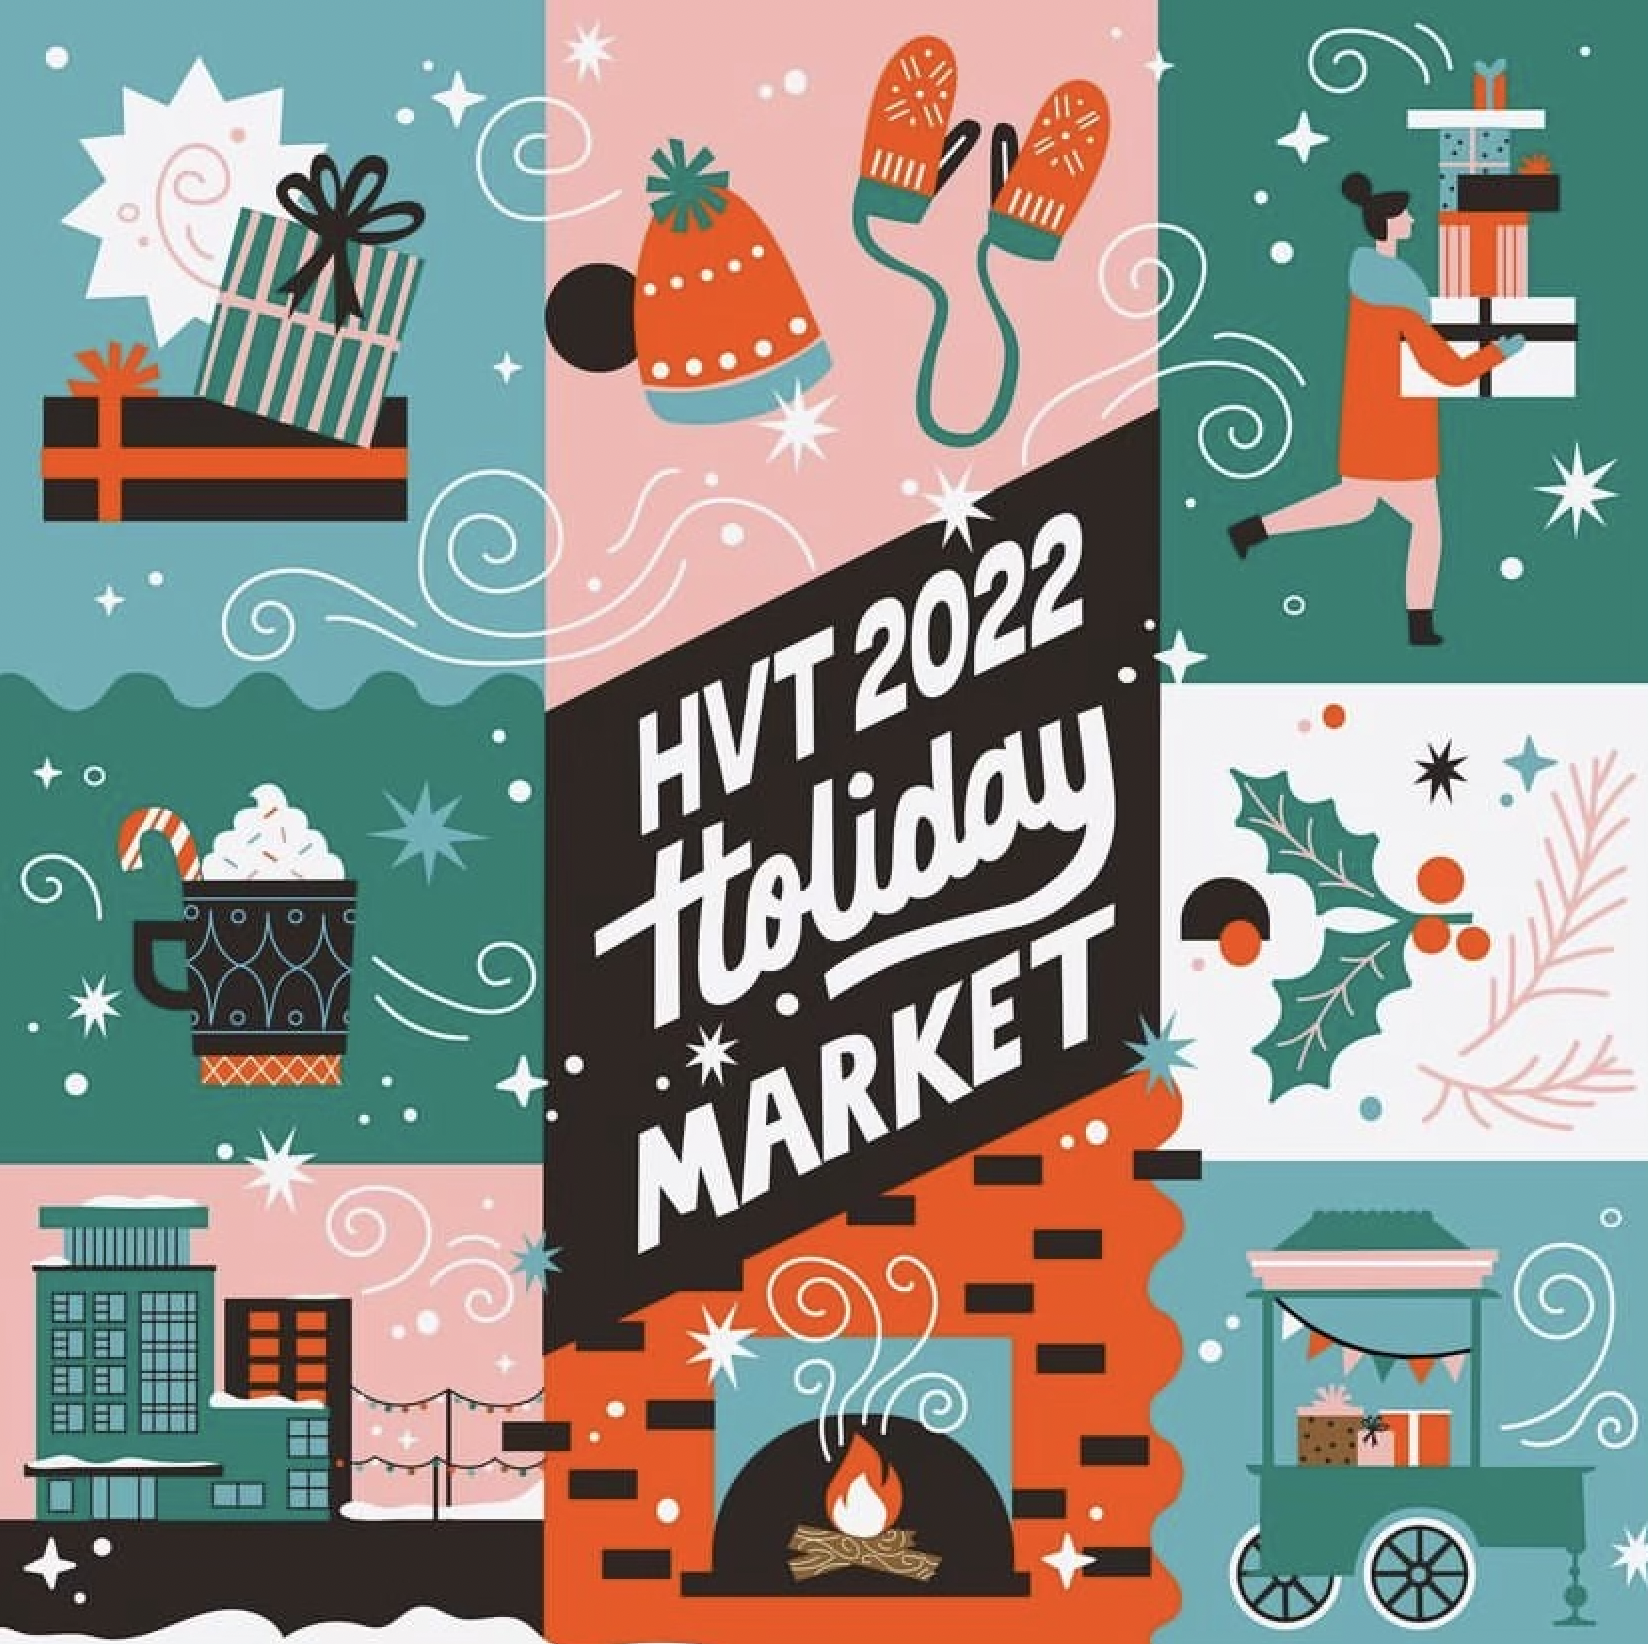 Poster for event titled "HVT 2022 Holiday market"